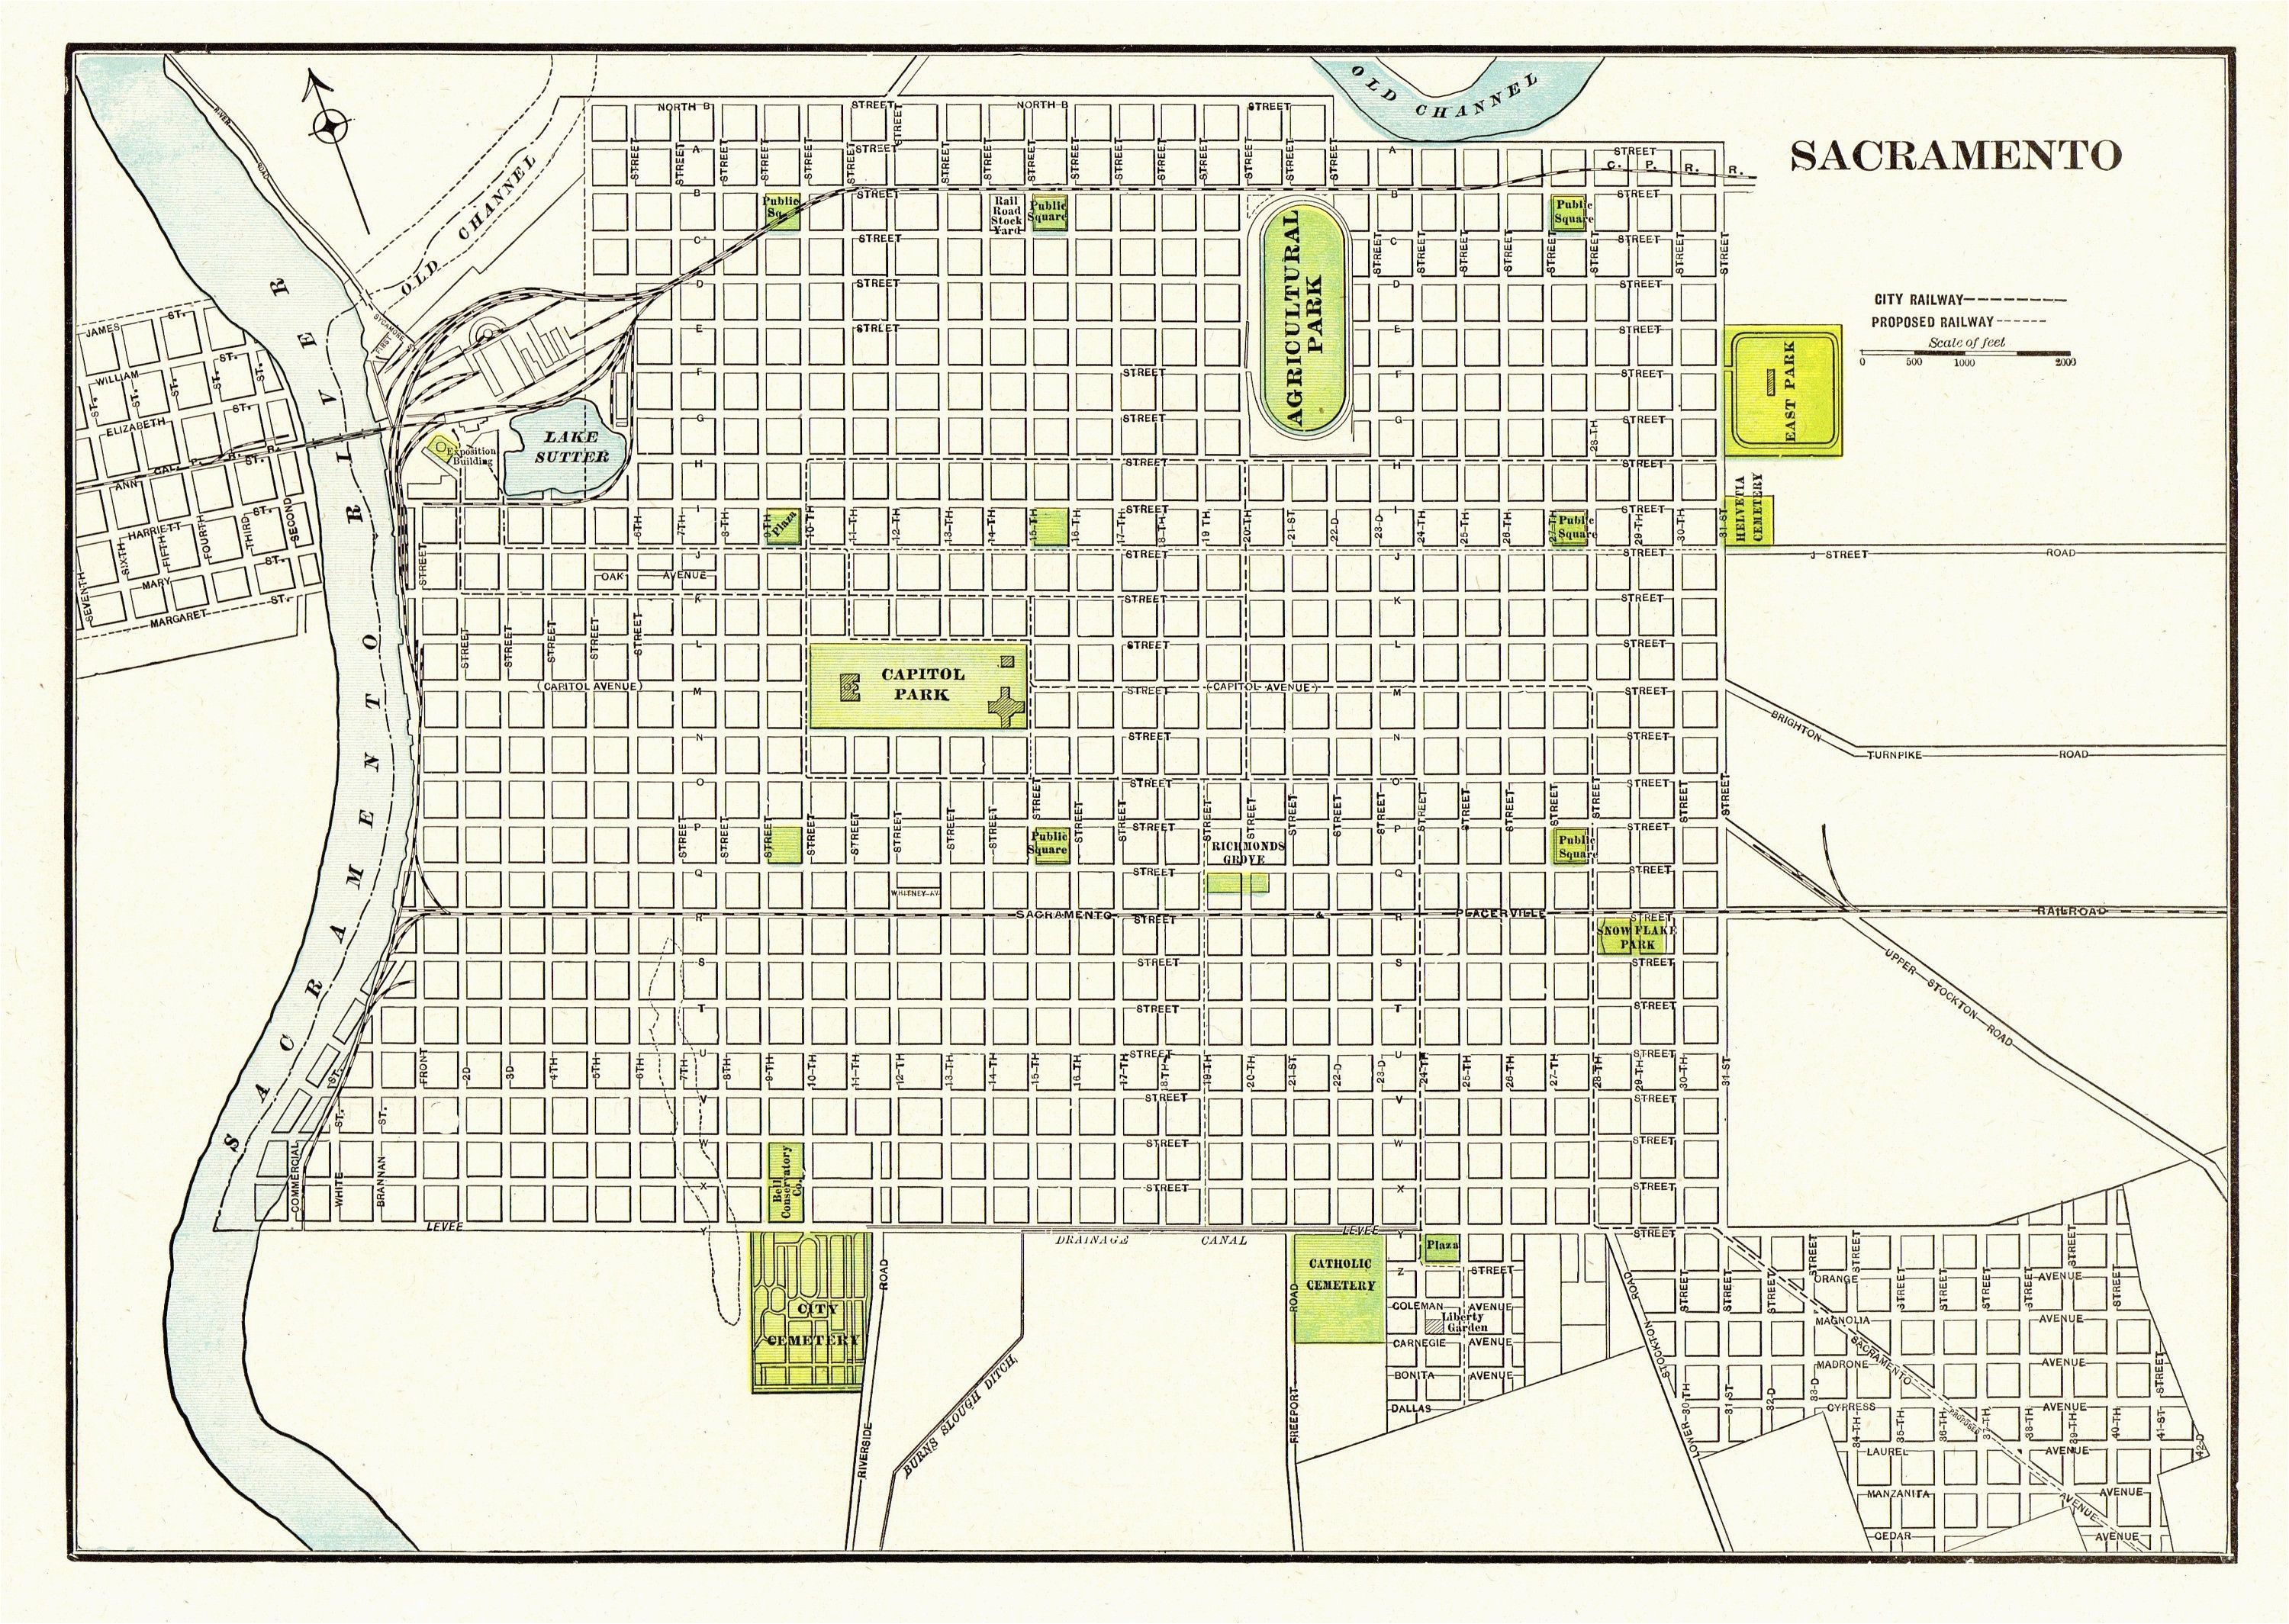 1901 antique sacramento city map reproduction print of sacramento